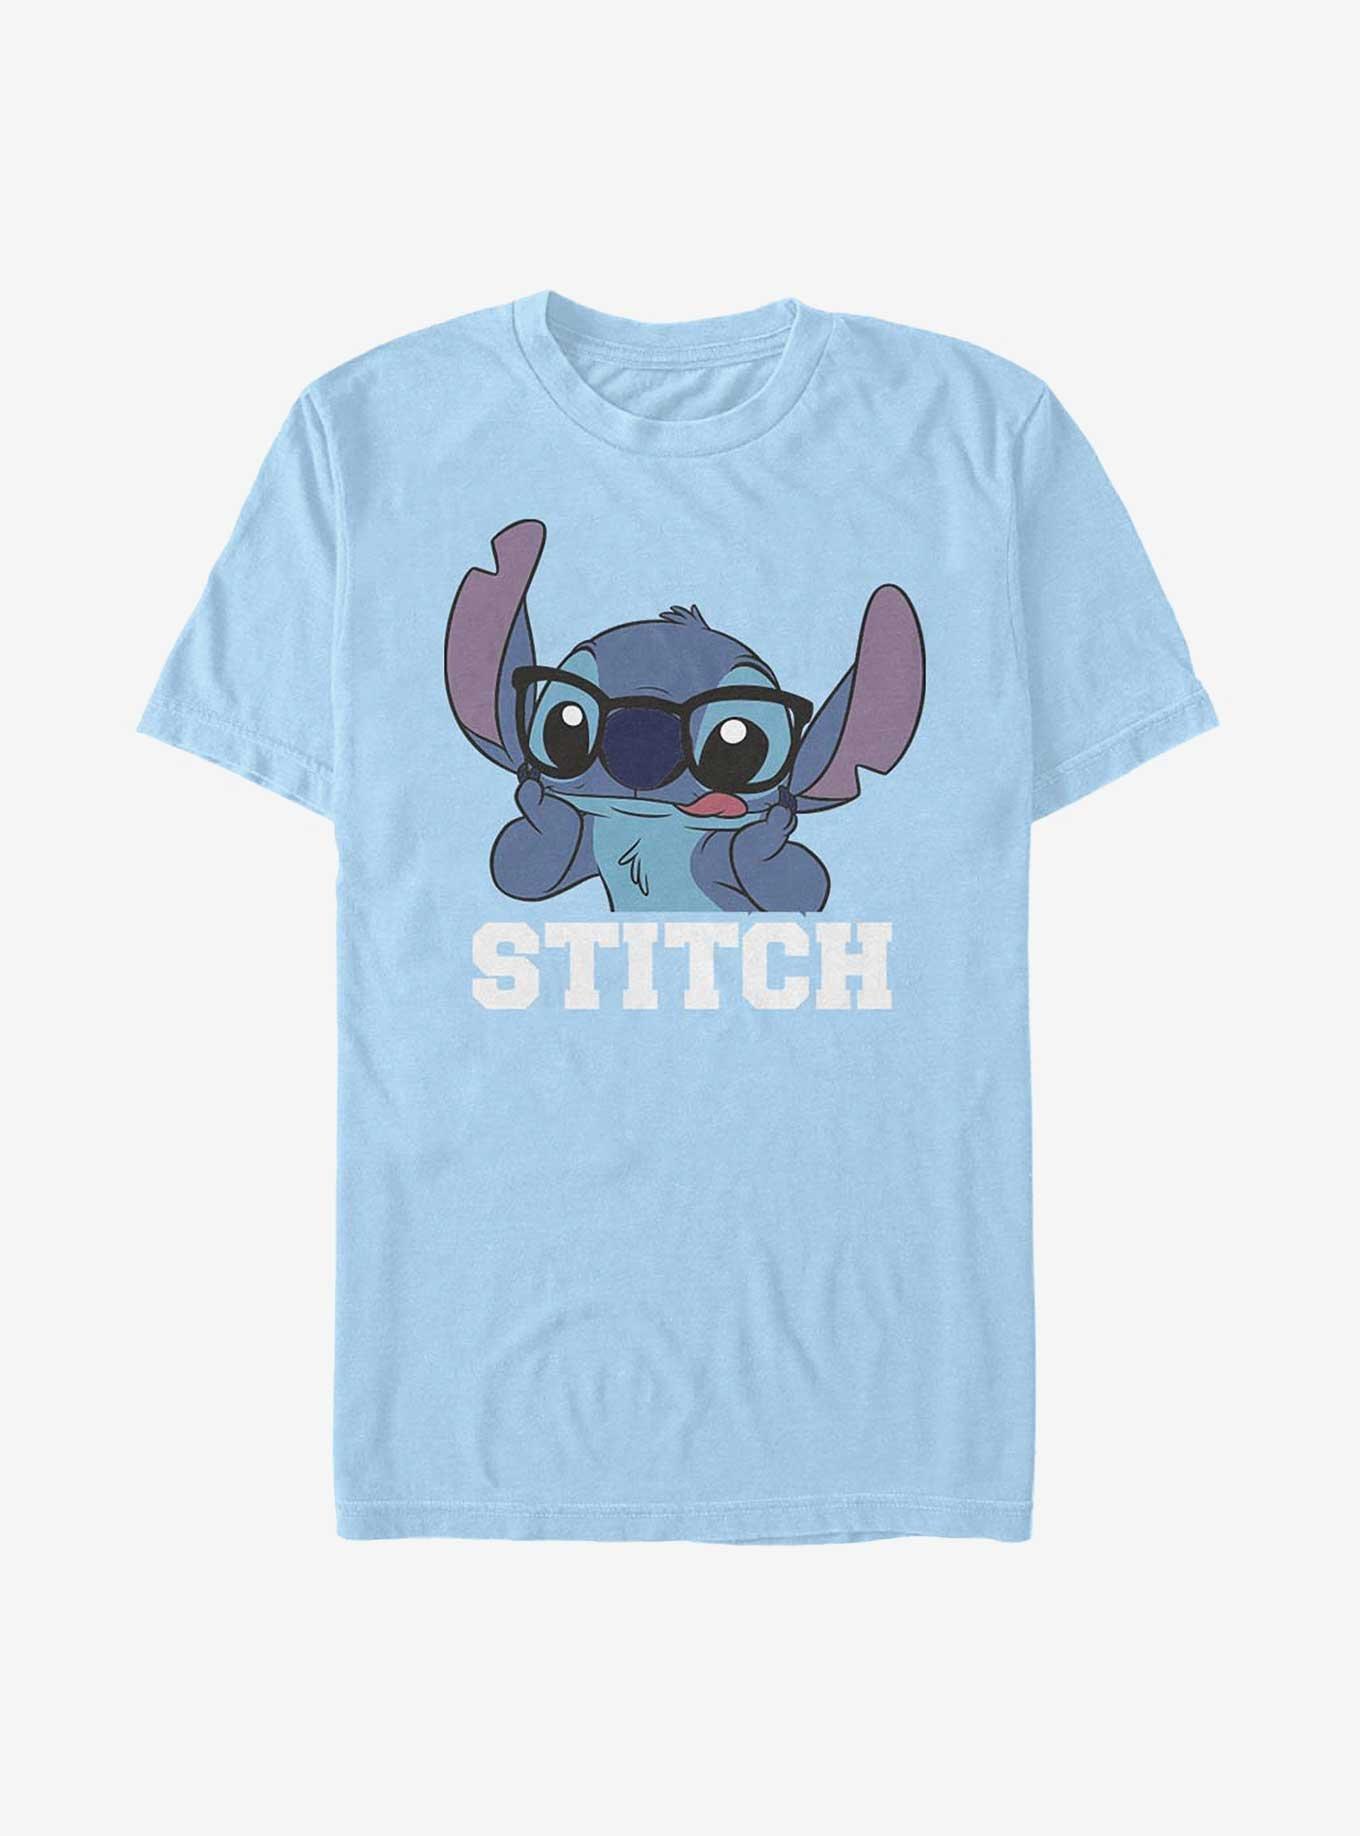 Disney Lilo & Stitch Tongue Out T-Shirt, LT BLUE, hi-res